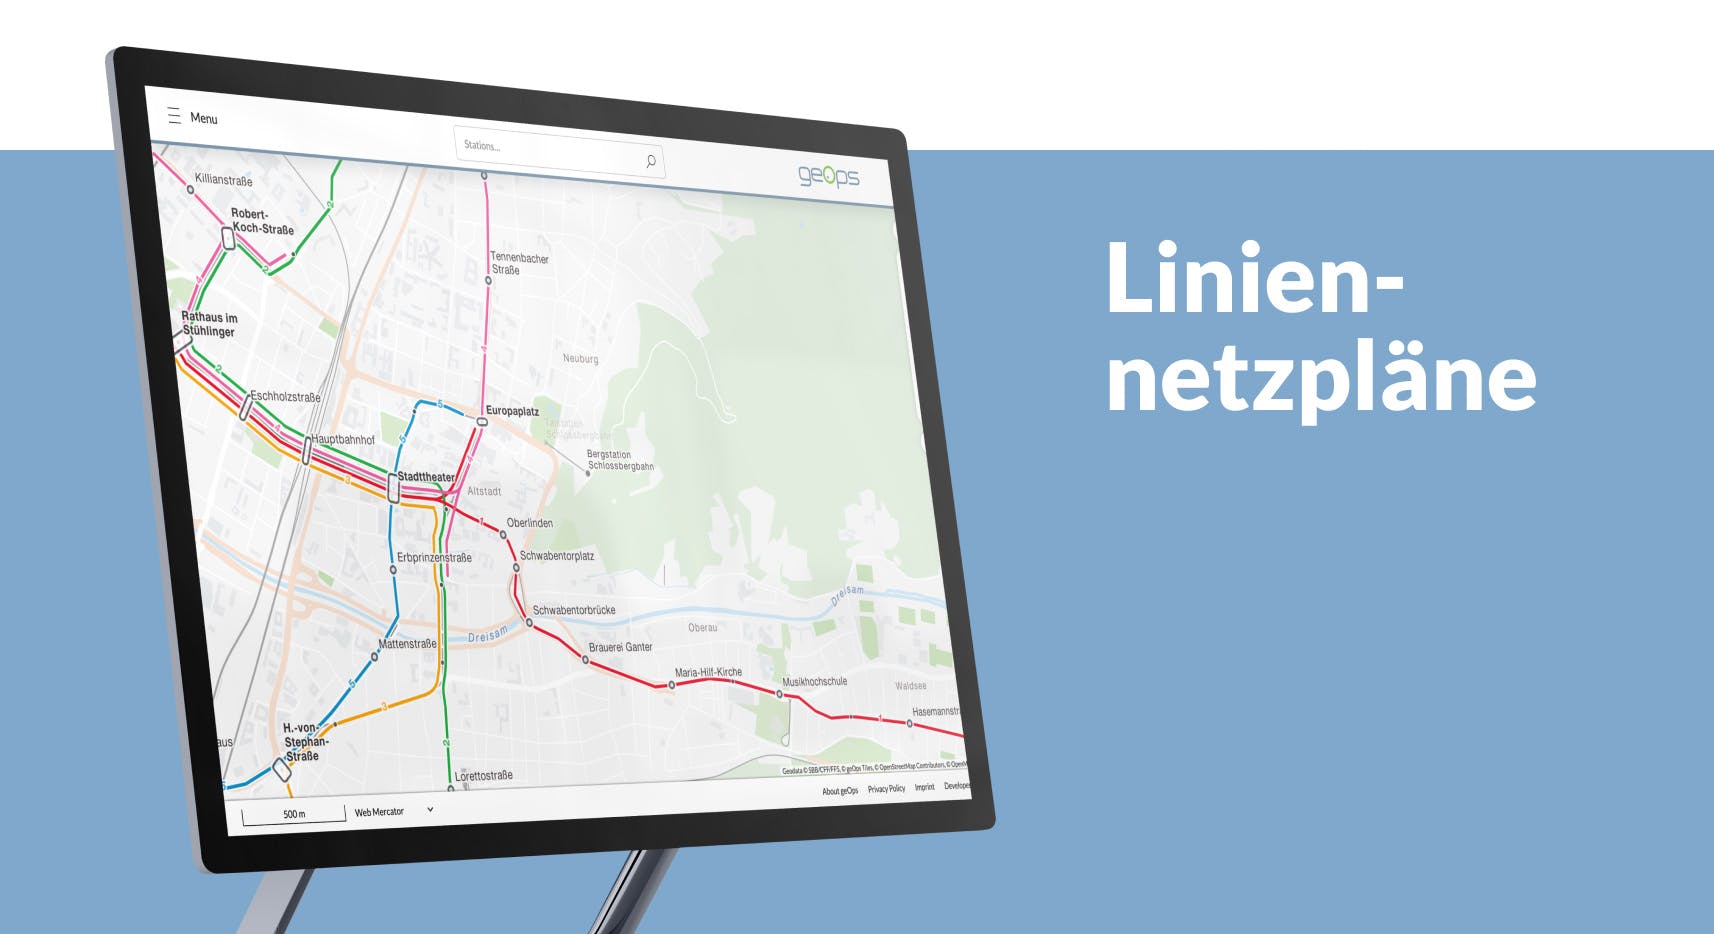 Public transport network plans